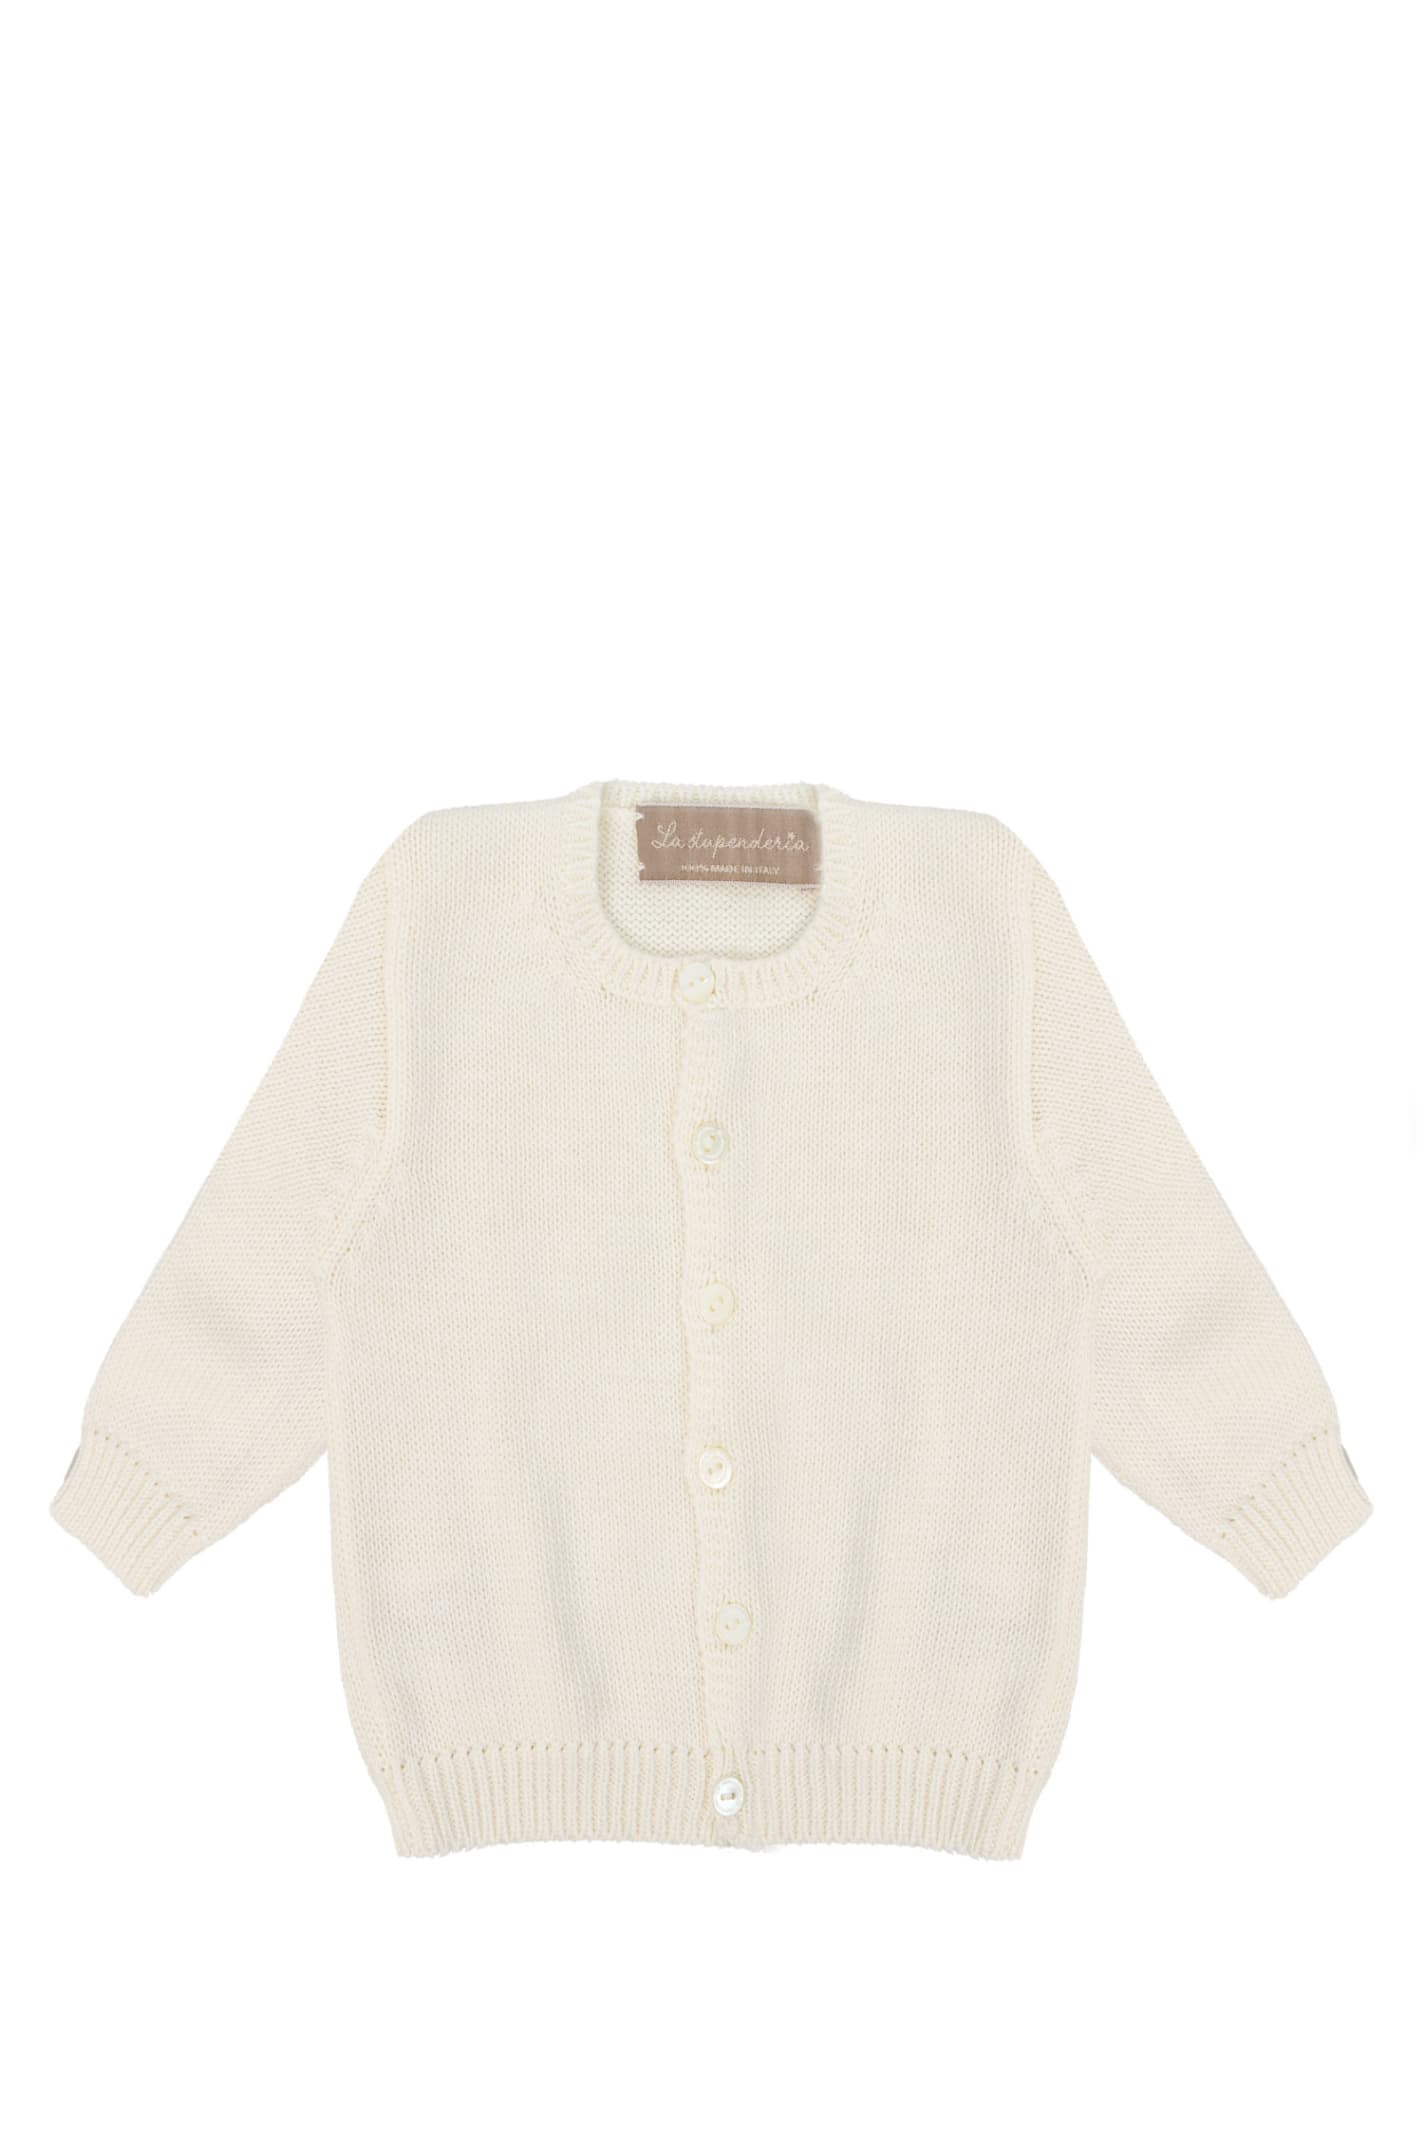 La Stupenderia Babies' Cotton Sweater In White